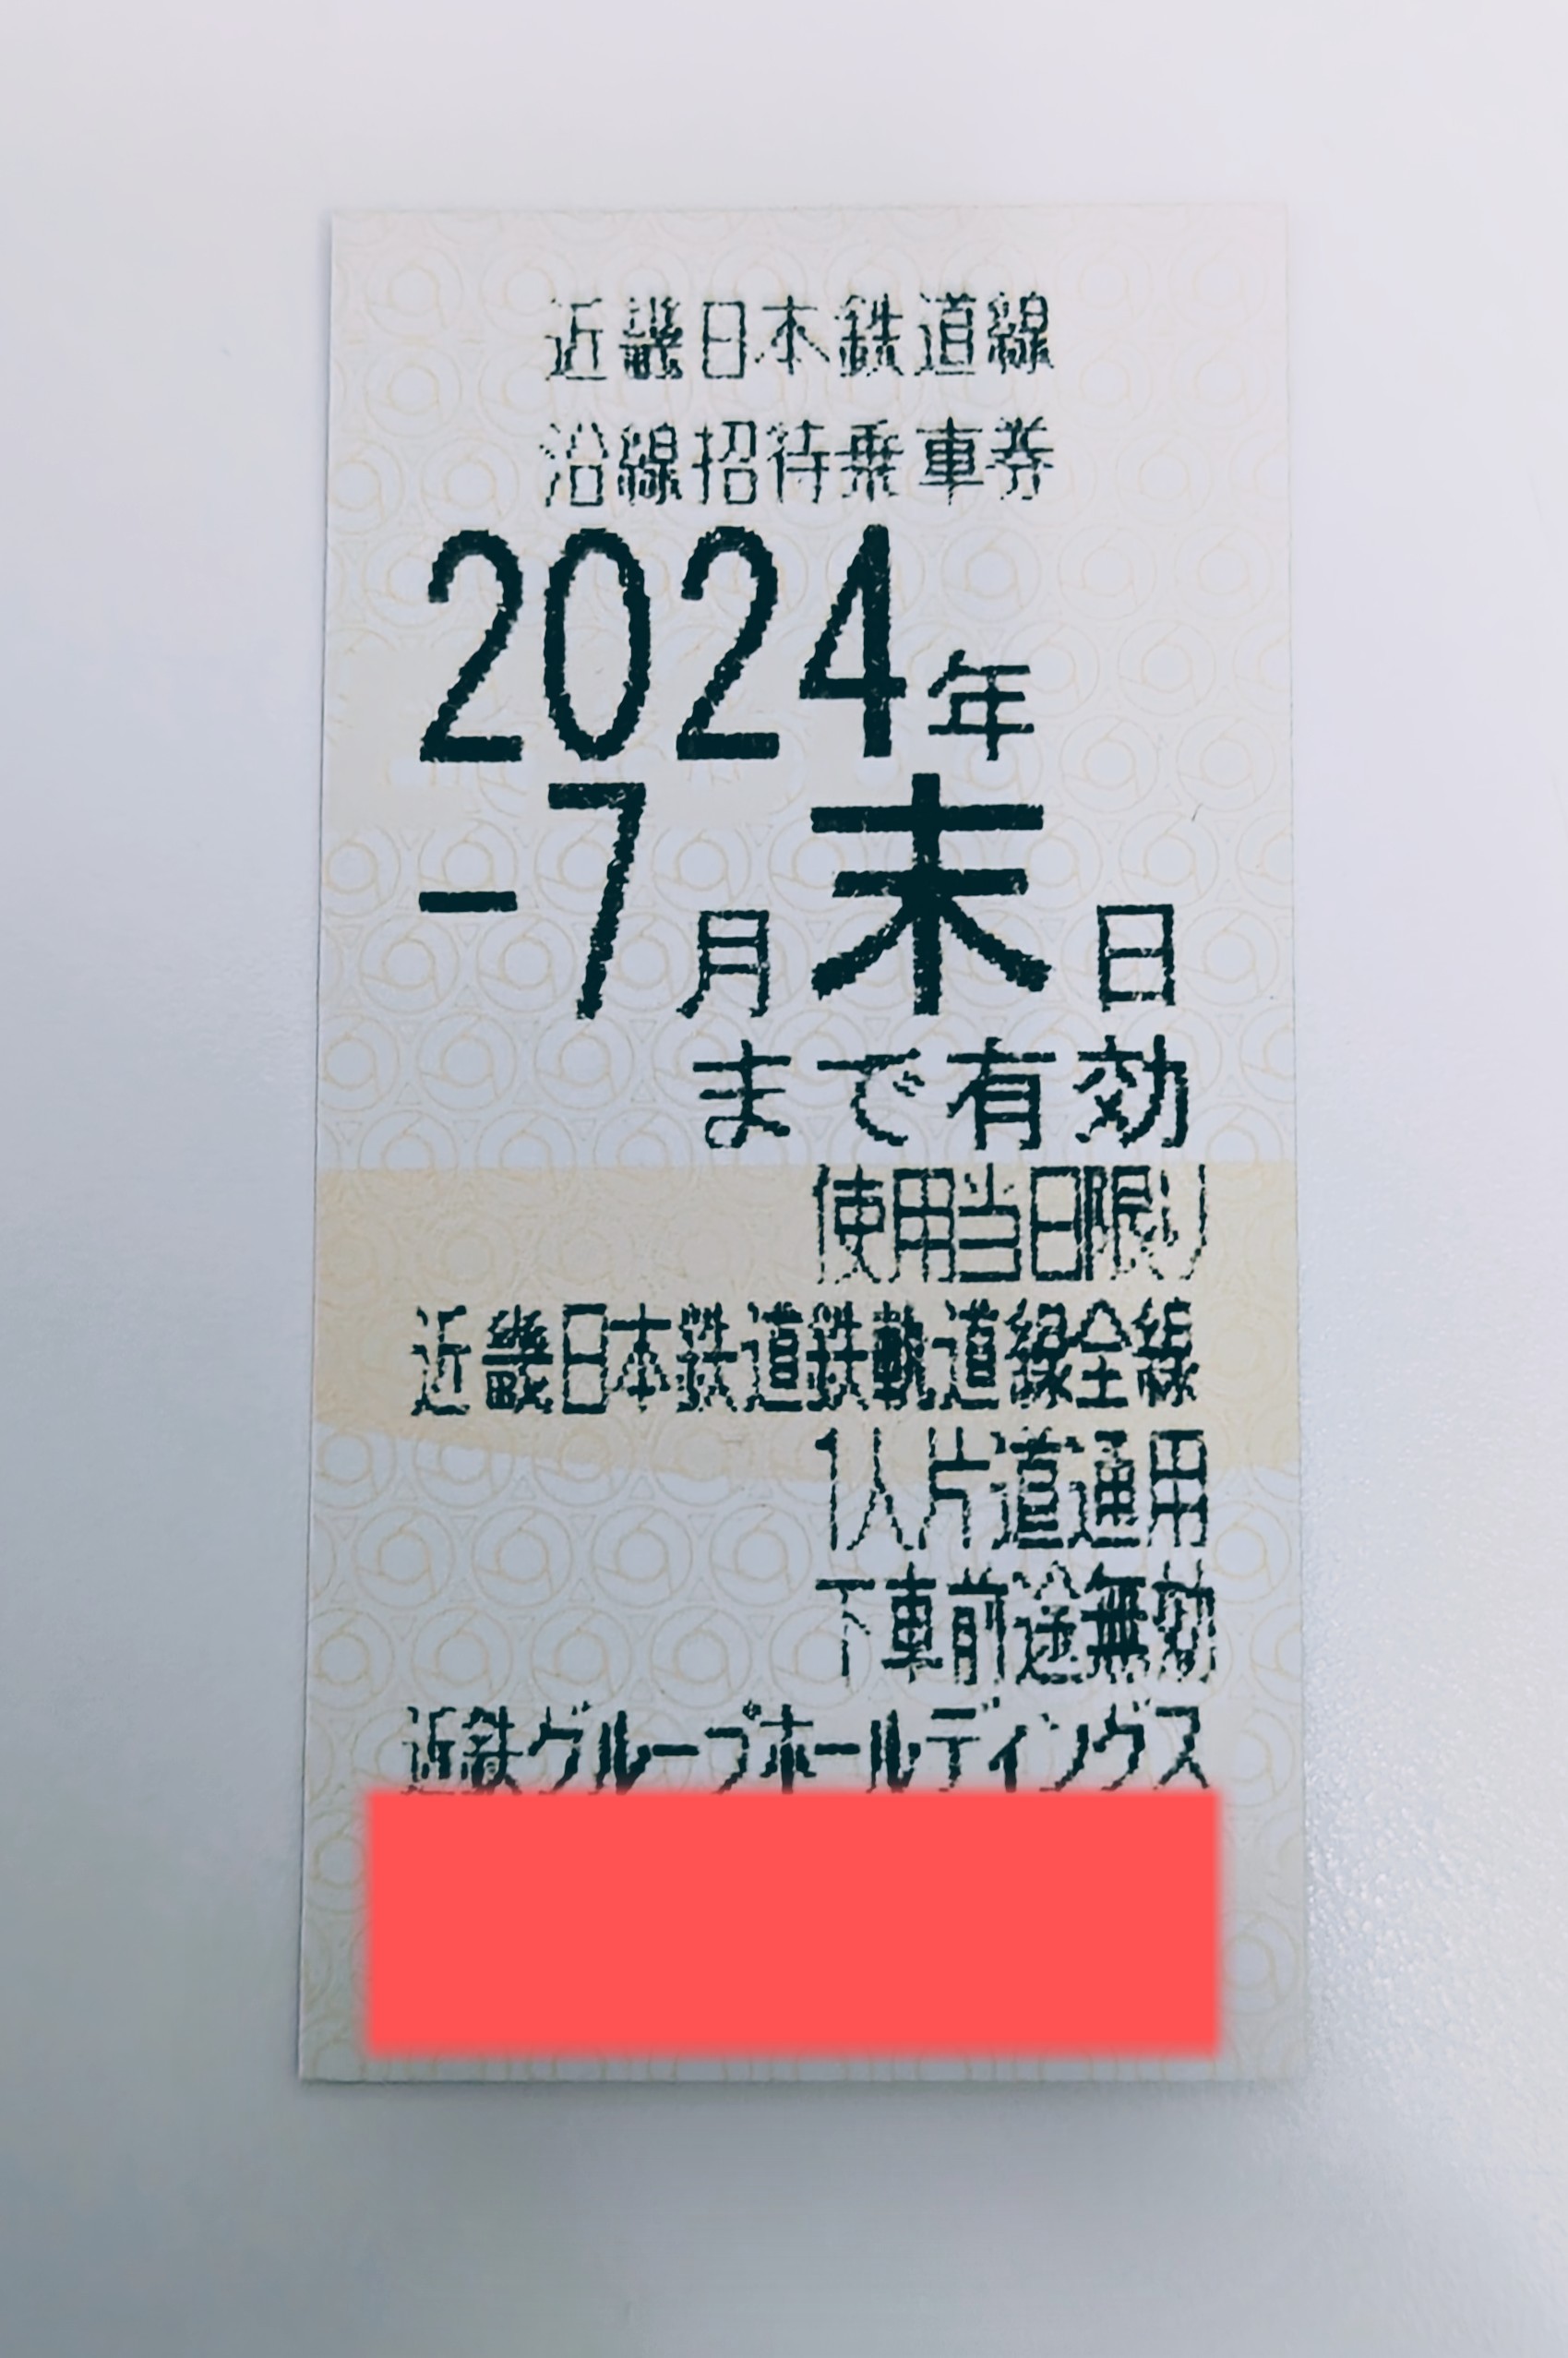 近鉄株主優待乗車券 2024年7月末日まで